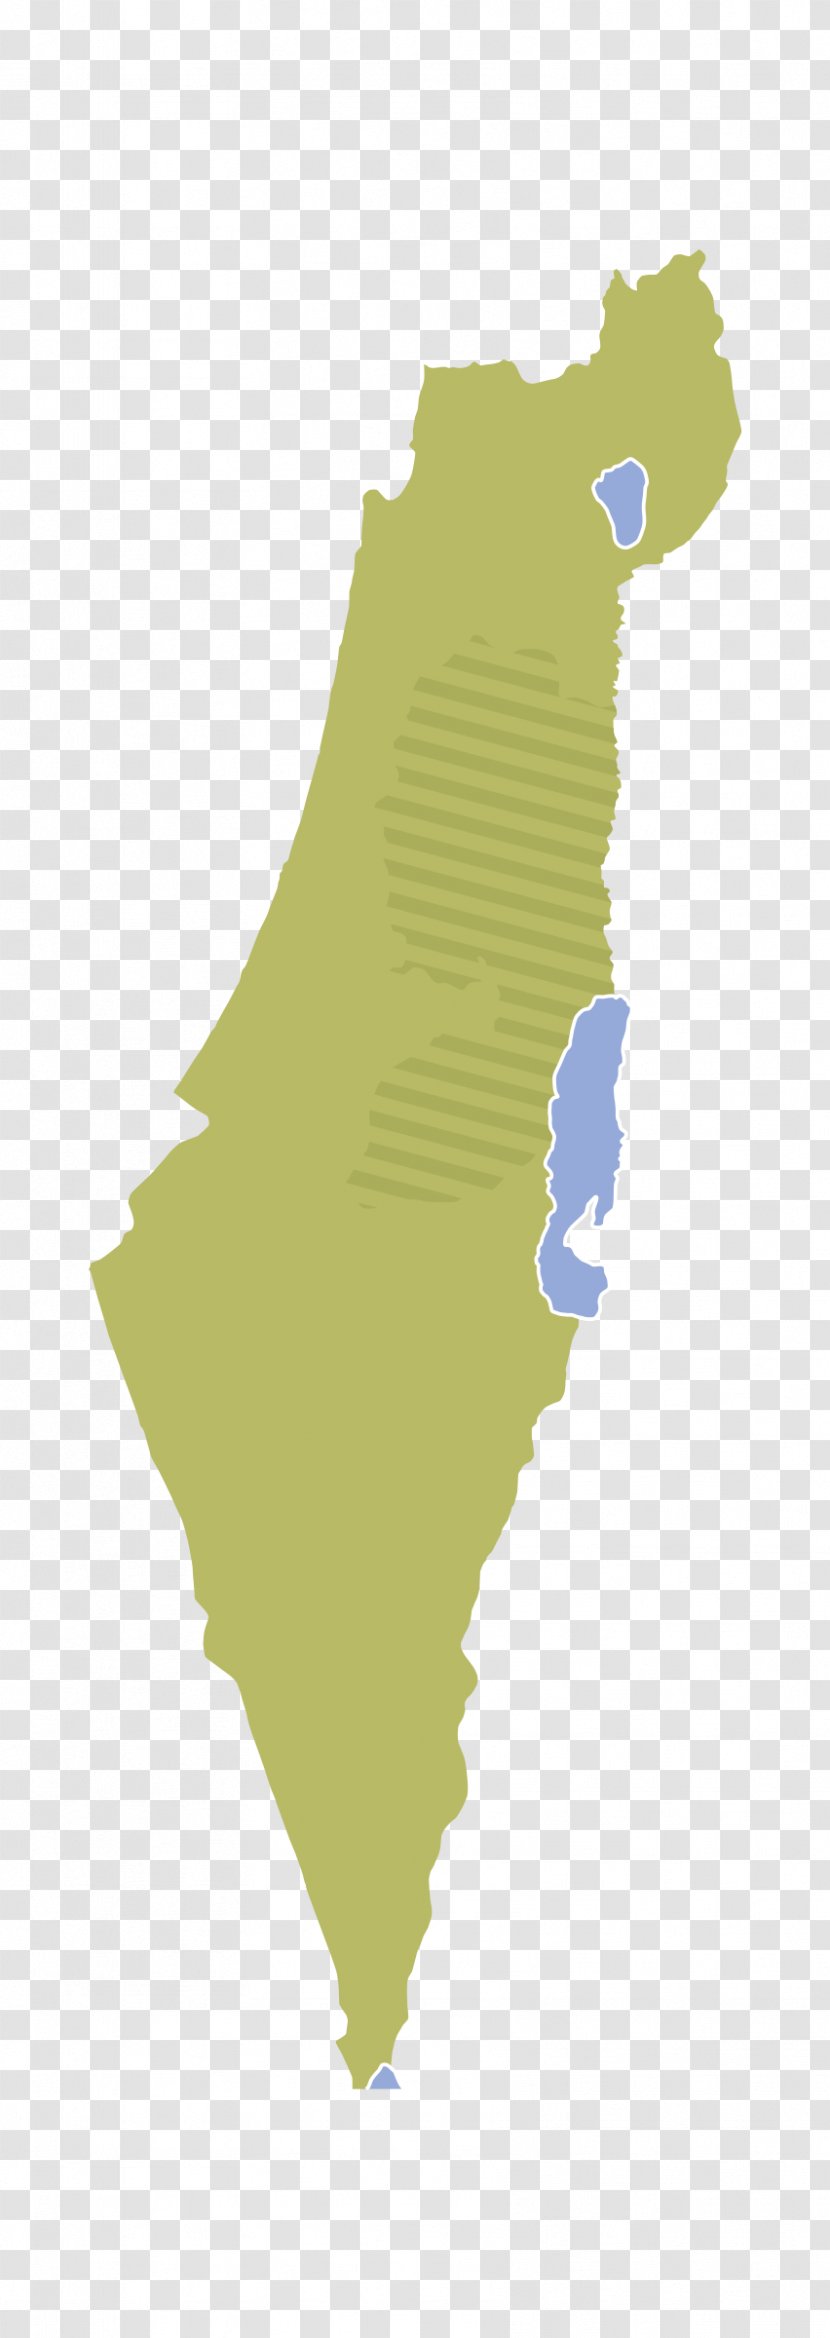 Israel Map Clip Art - Royaltyfree Transparent PNG